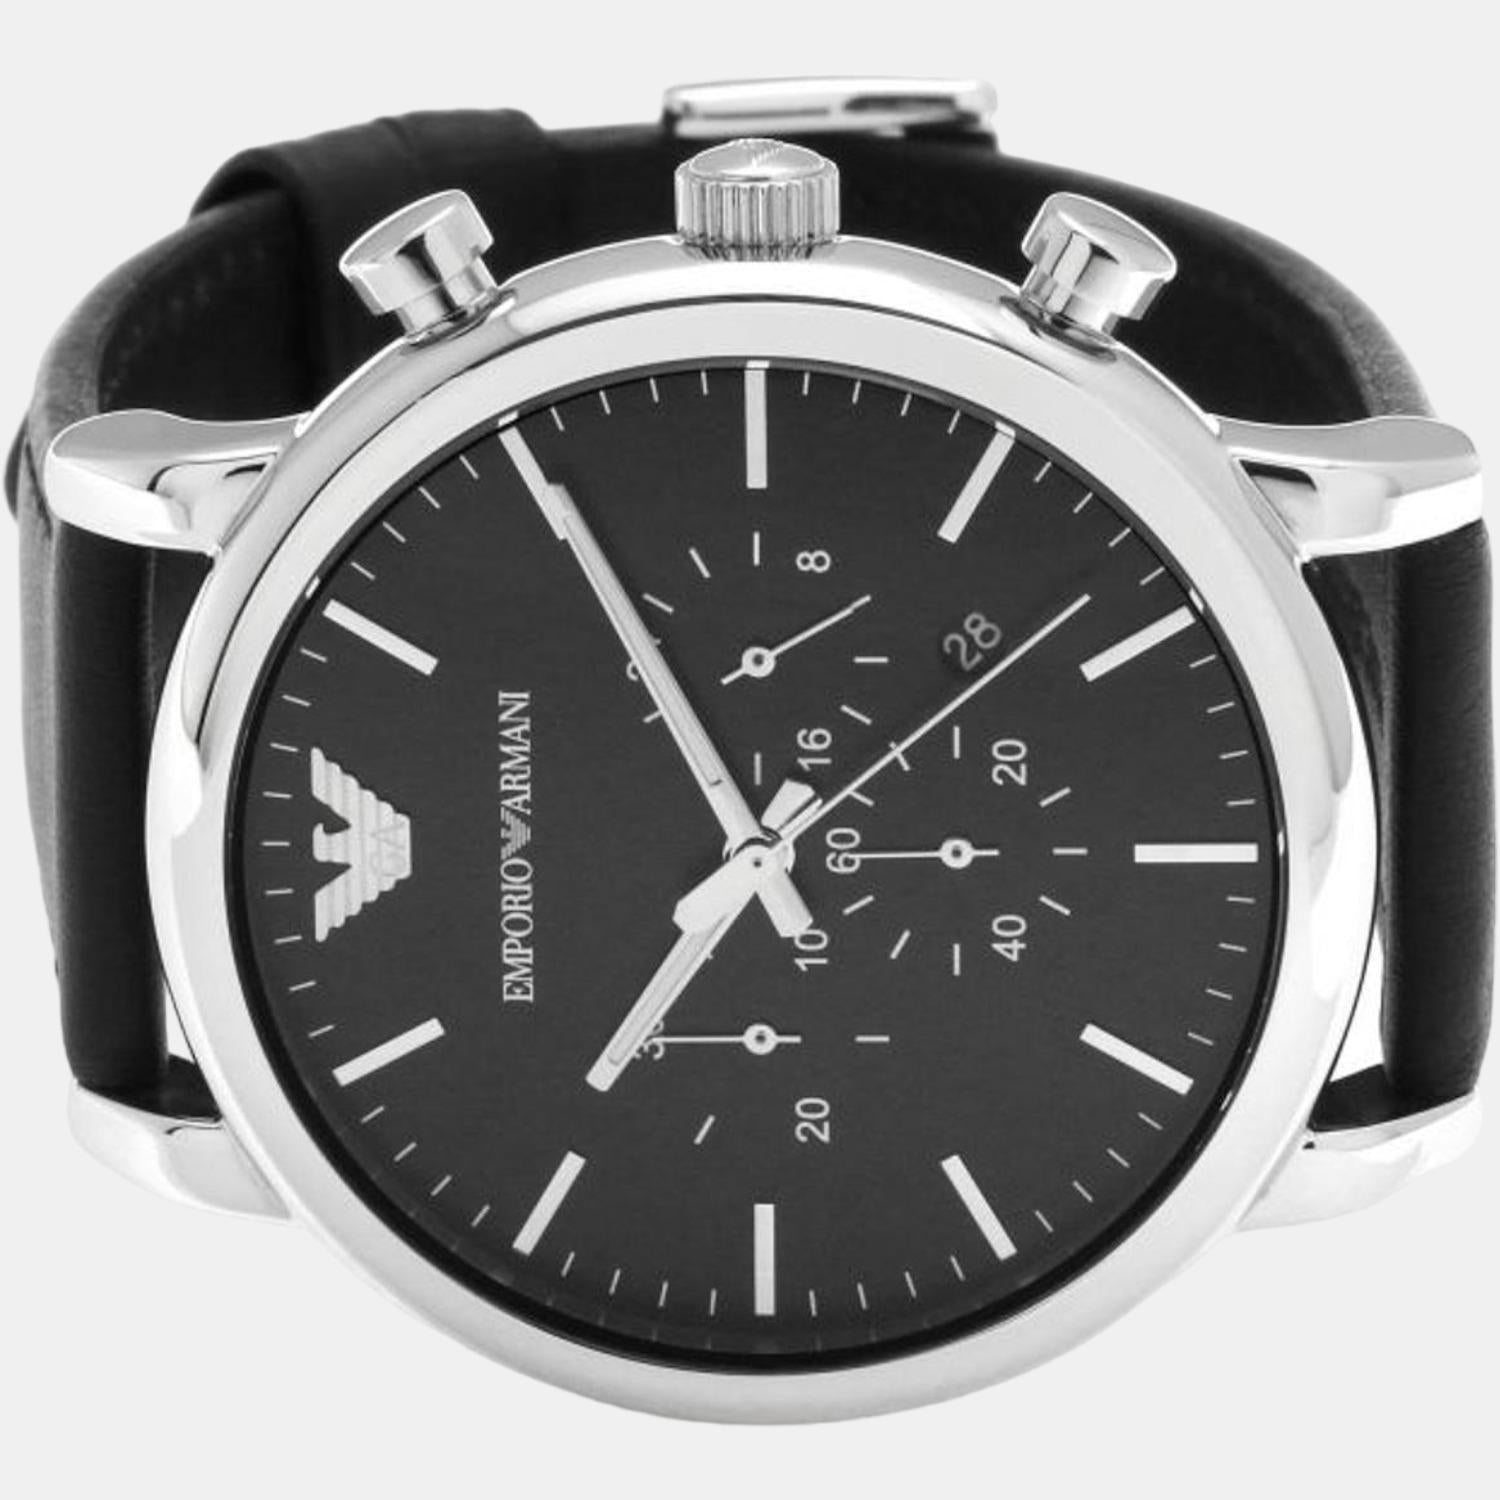 Male Quartz Emporio | Chronograph Armani Black Time In Leather Watch – Just Armani Emporio